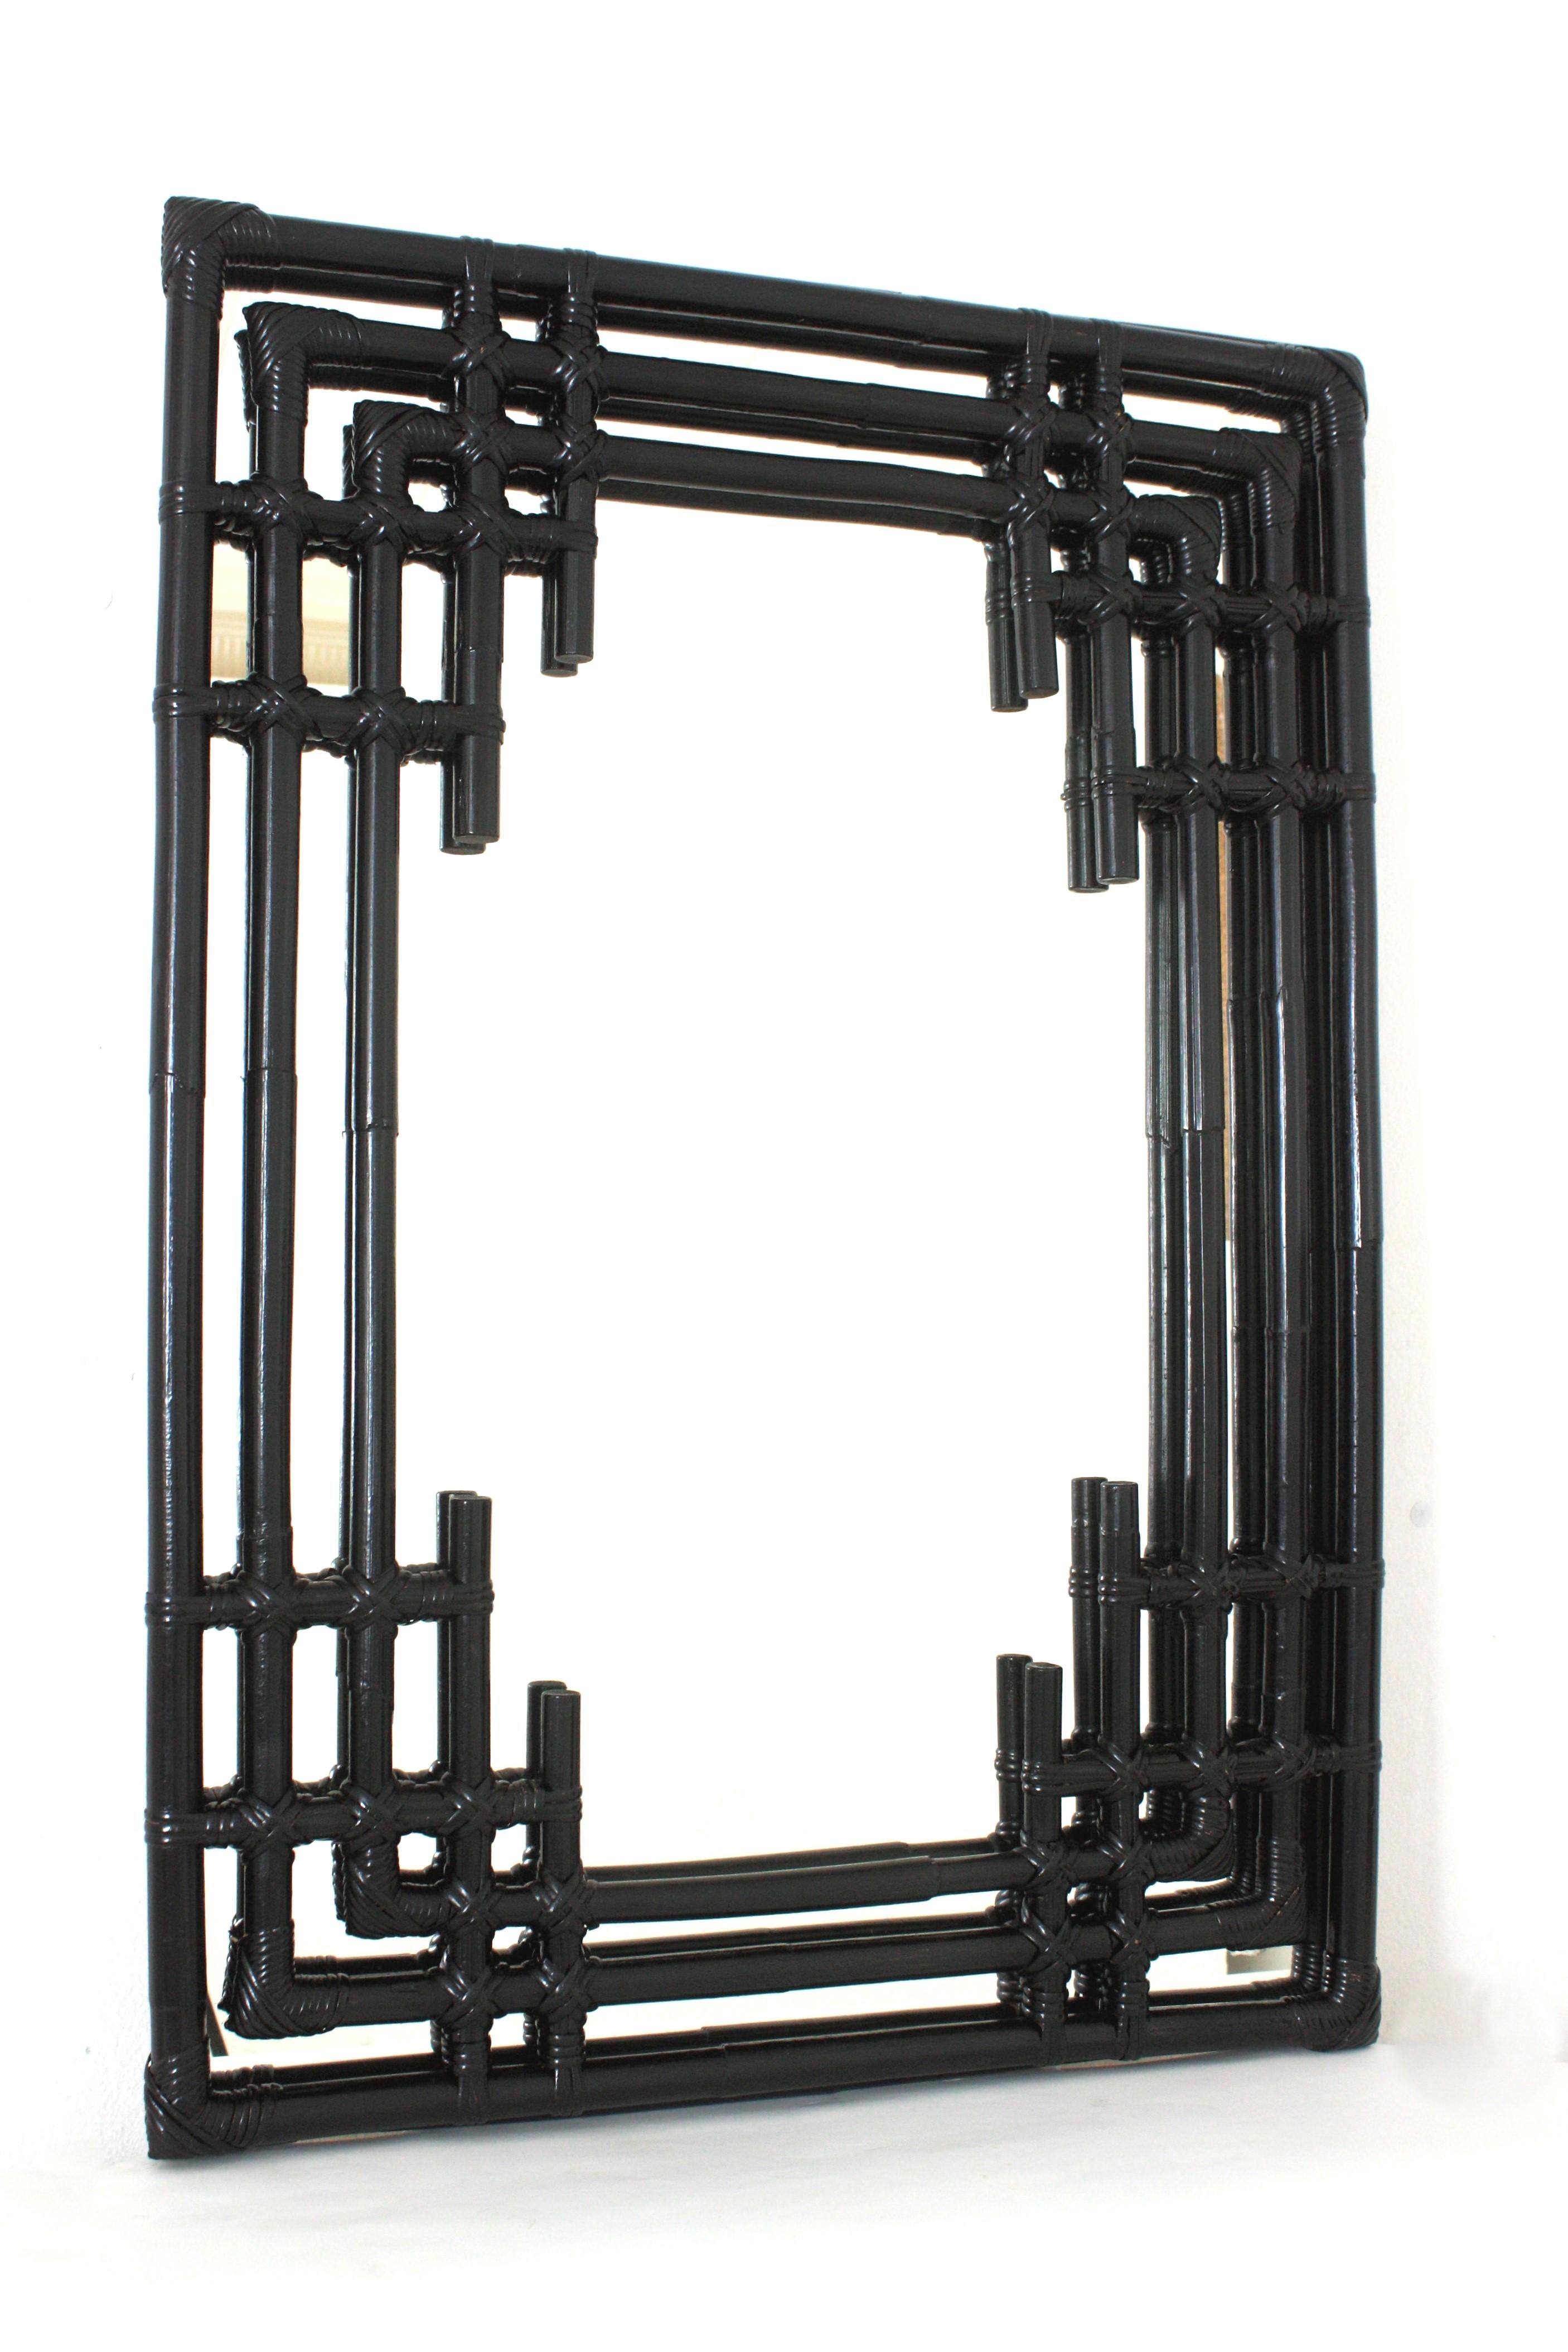 Spanischer Mid-Century Modern Bamboo Chinoiserie Tiki Stil rechteckiger Wandspiegel. Spanien, 1960er Jahre.
Wunderschöner rechteckiger Spiegel im Tiki-Stil, handgefertigt aus Bambusrohren. Sie hat einen sehr dekorativen Rahmen mit orientalisch